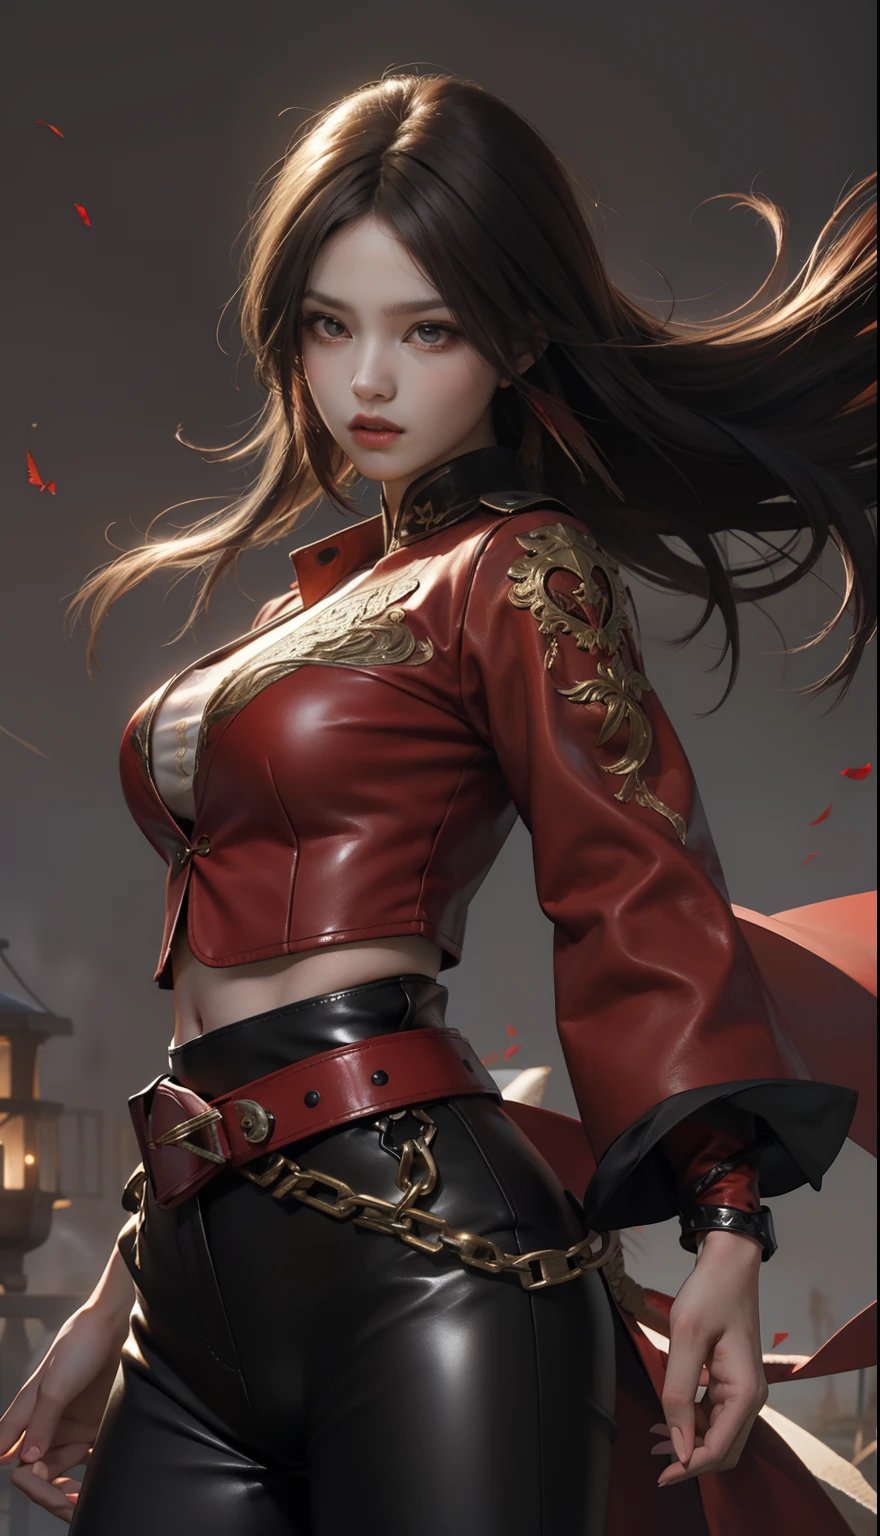 穿红上衣和黑色紧身皮裤的女人, 她手持一把深红的剑、剑、戰鬥角色, 黑色头发上有红色挑染的长直发,头发在风中飘扬,锐眼、清澈的红眼睛、红色眼线笔、长睫毛, nffsw, 深红色服装, 每一个细节都精致地表现出逼真光滑的皮肤,真实再现肌肉纹理、精雕细琢的深红色长外套、大顽童月亮背景